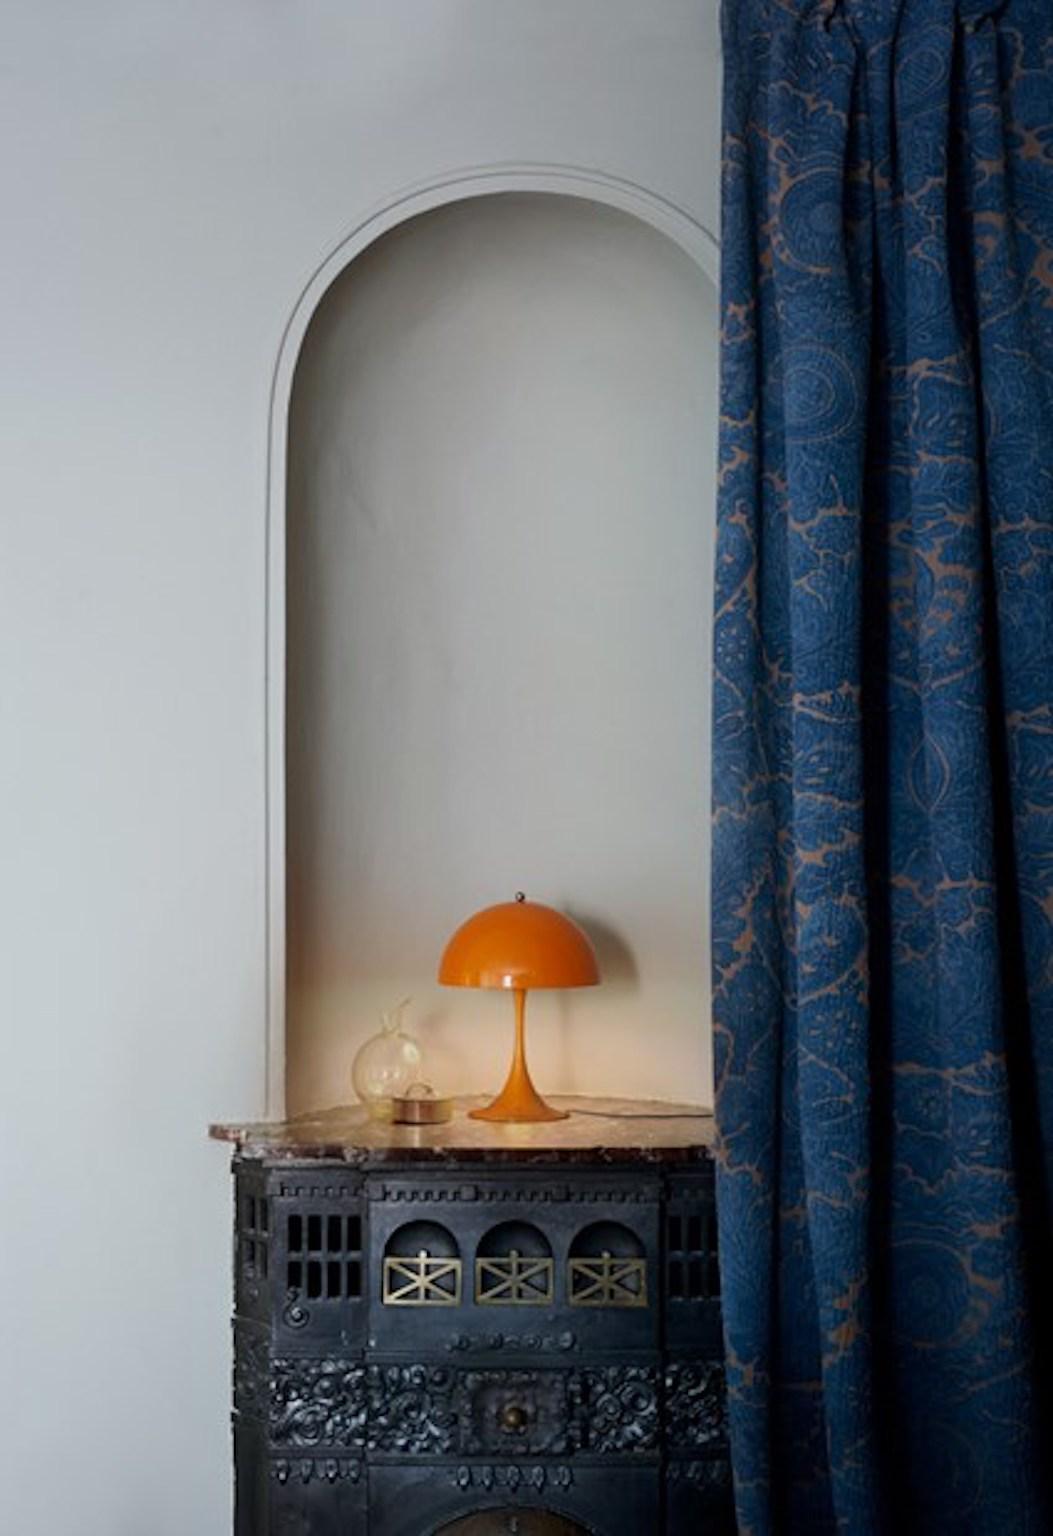 Verner Panton Panthella Mini lampe de table LED en orange pour Louis Poulsen. La lampe de table Panthella mini LED utilise les dessins originaux de Verner Panton pour produire une lampe de forme organique avec un abat-jour en métal. La lampe de